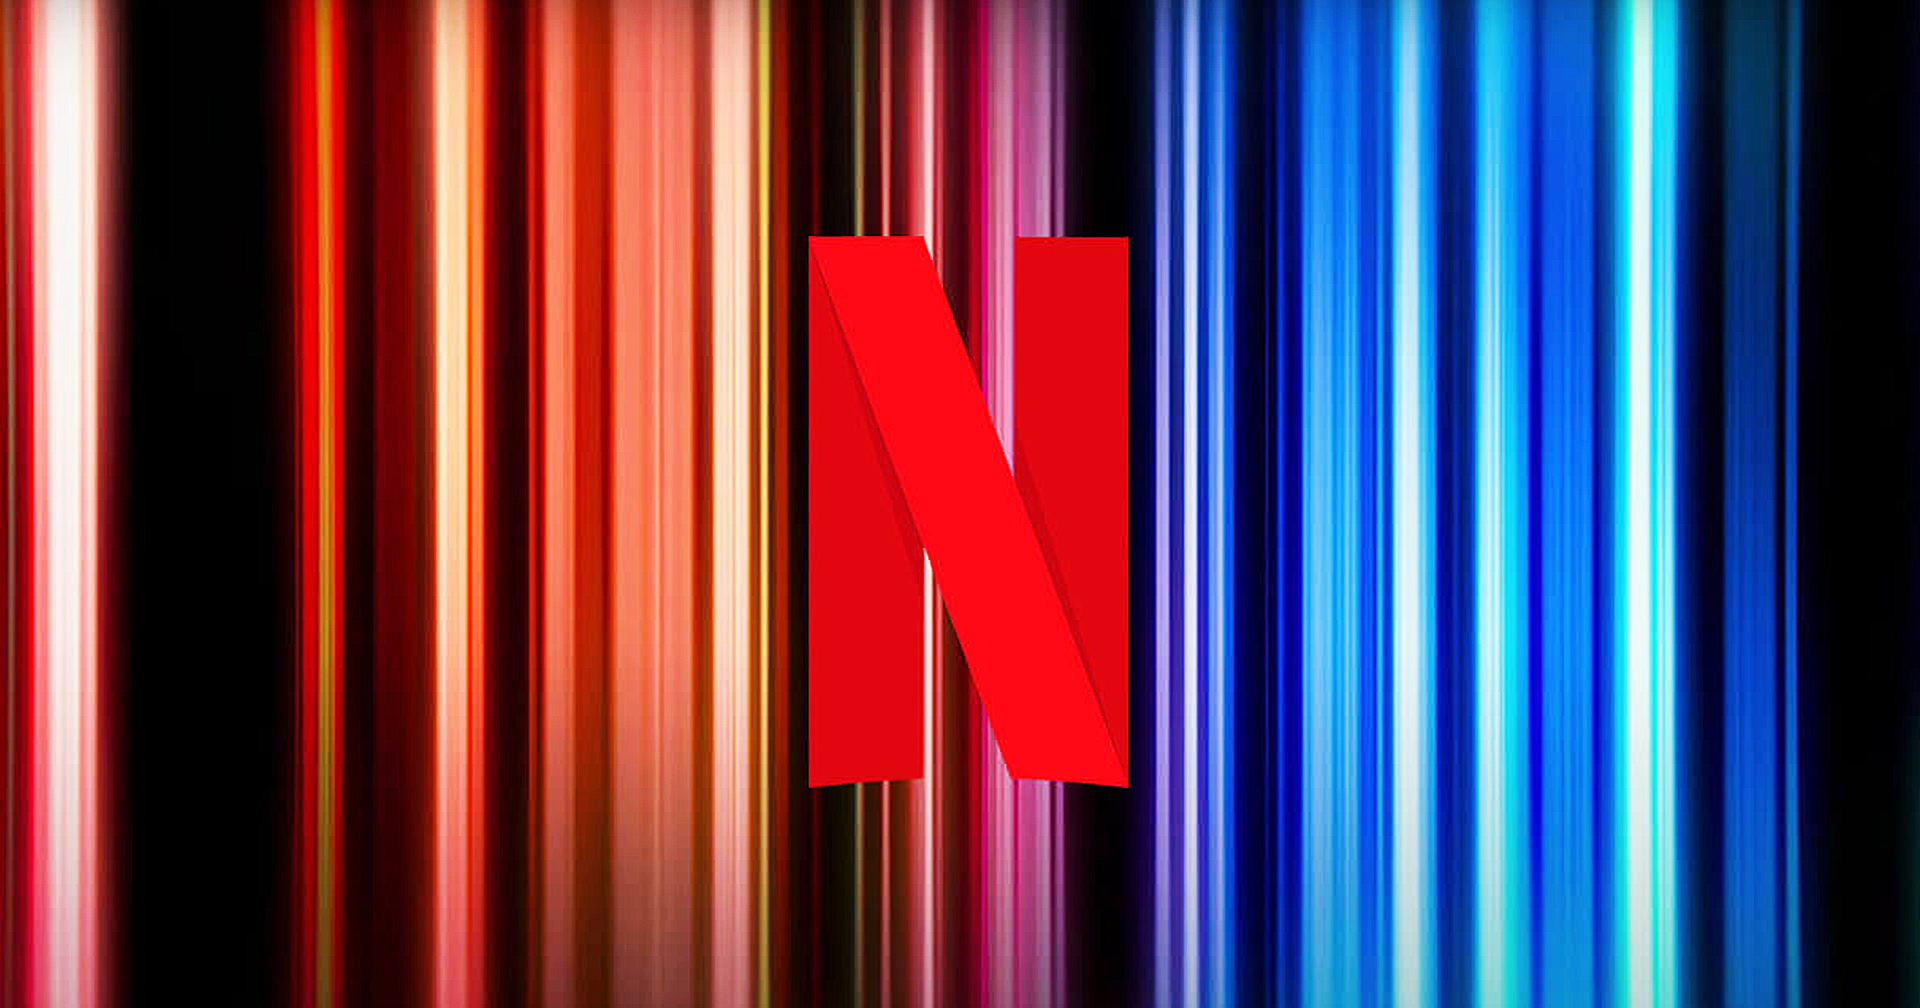 Netflix เสียผู้ใช้ไปเกือบ 1 ล้านคน ในช่วง 3 เดือนที่ผ่านมา